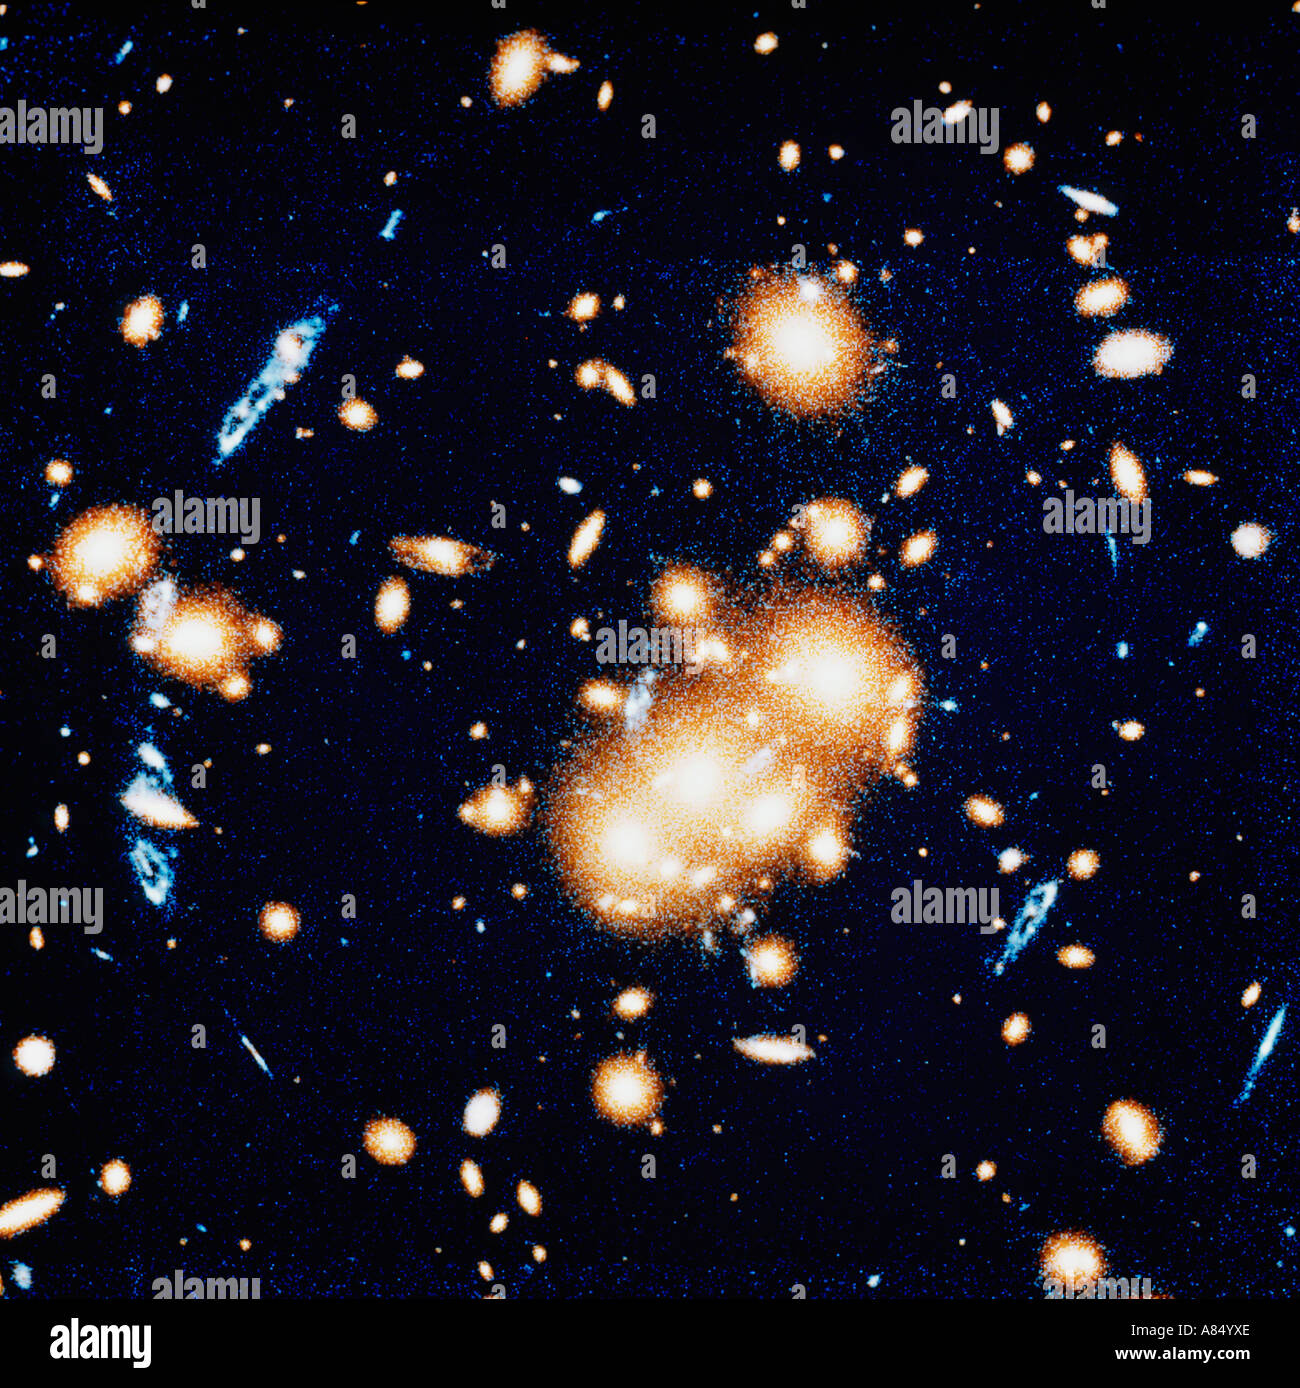 Espace et astronomie. Image du télescope Hubble. Vue en profondeur de l'Univers montrant les premières galaxies formées. Banque D'Images